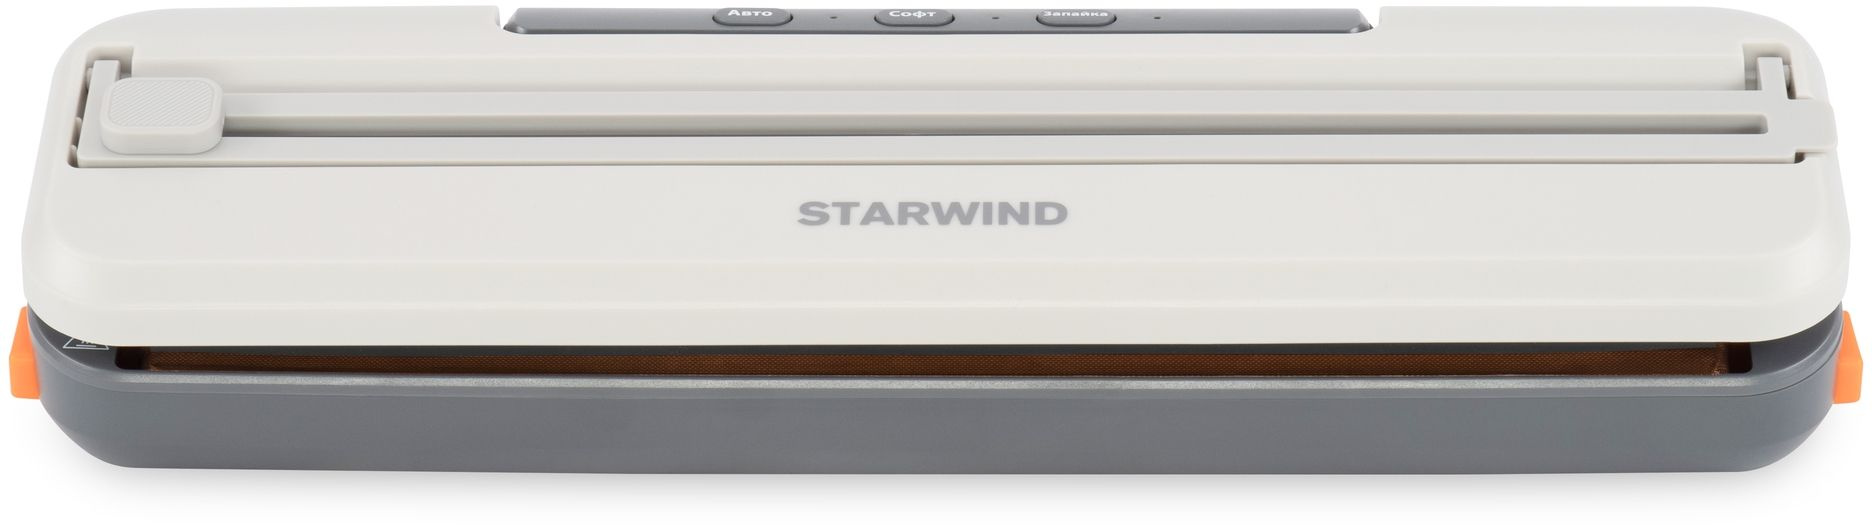 Вакуумный упаковщик Starwind STVA1000 110Вт серый